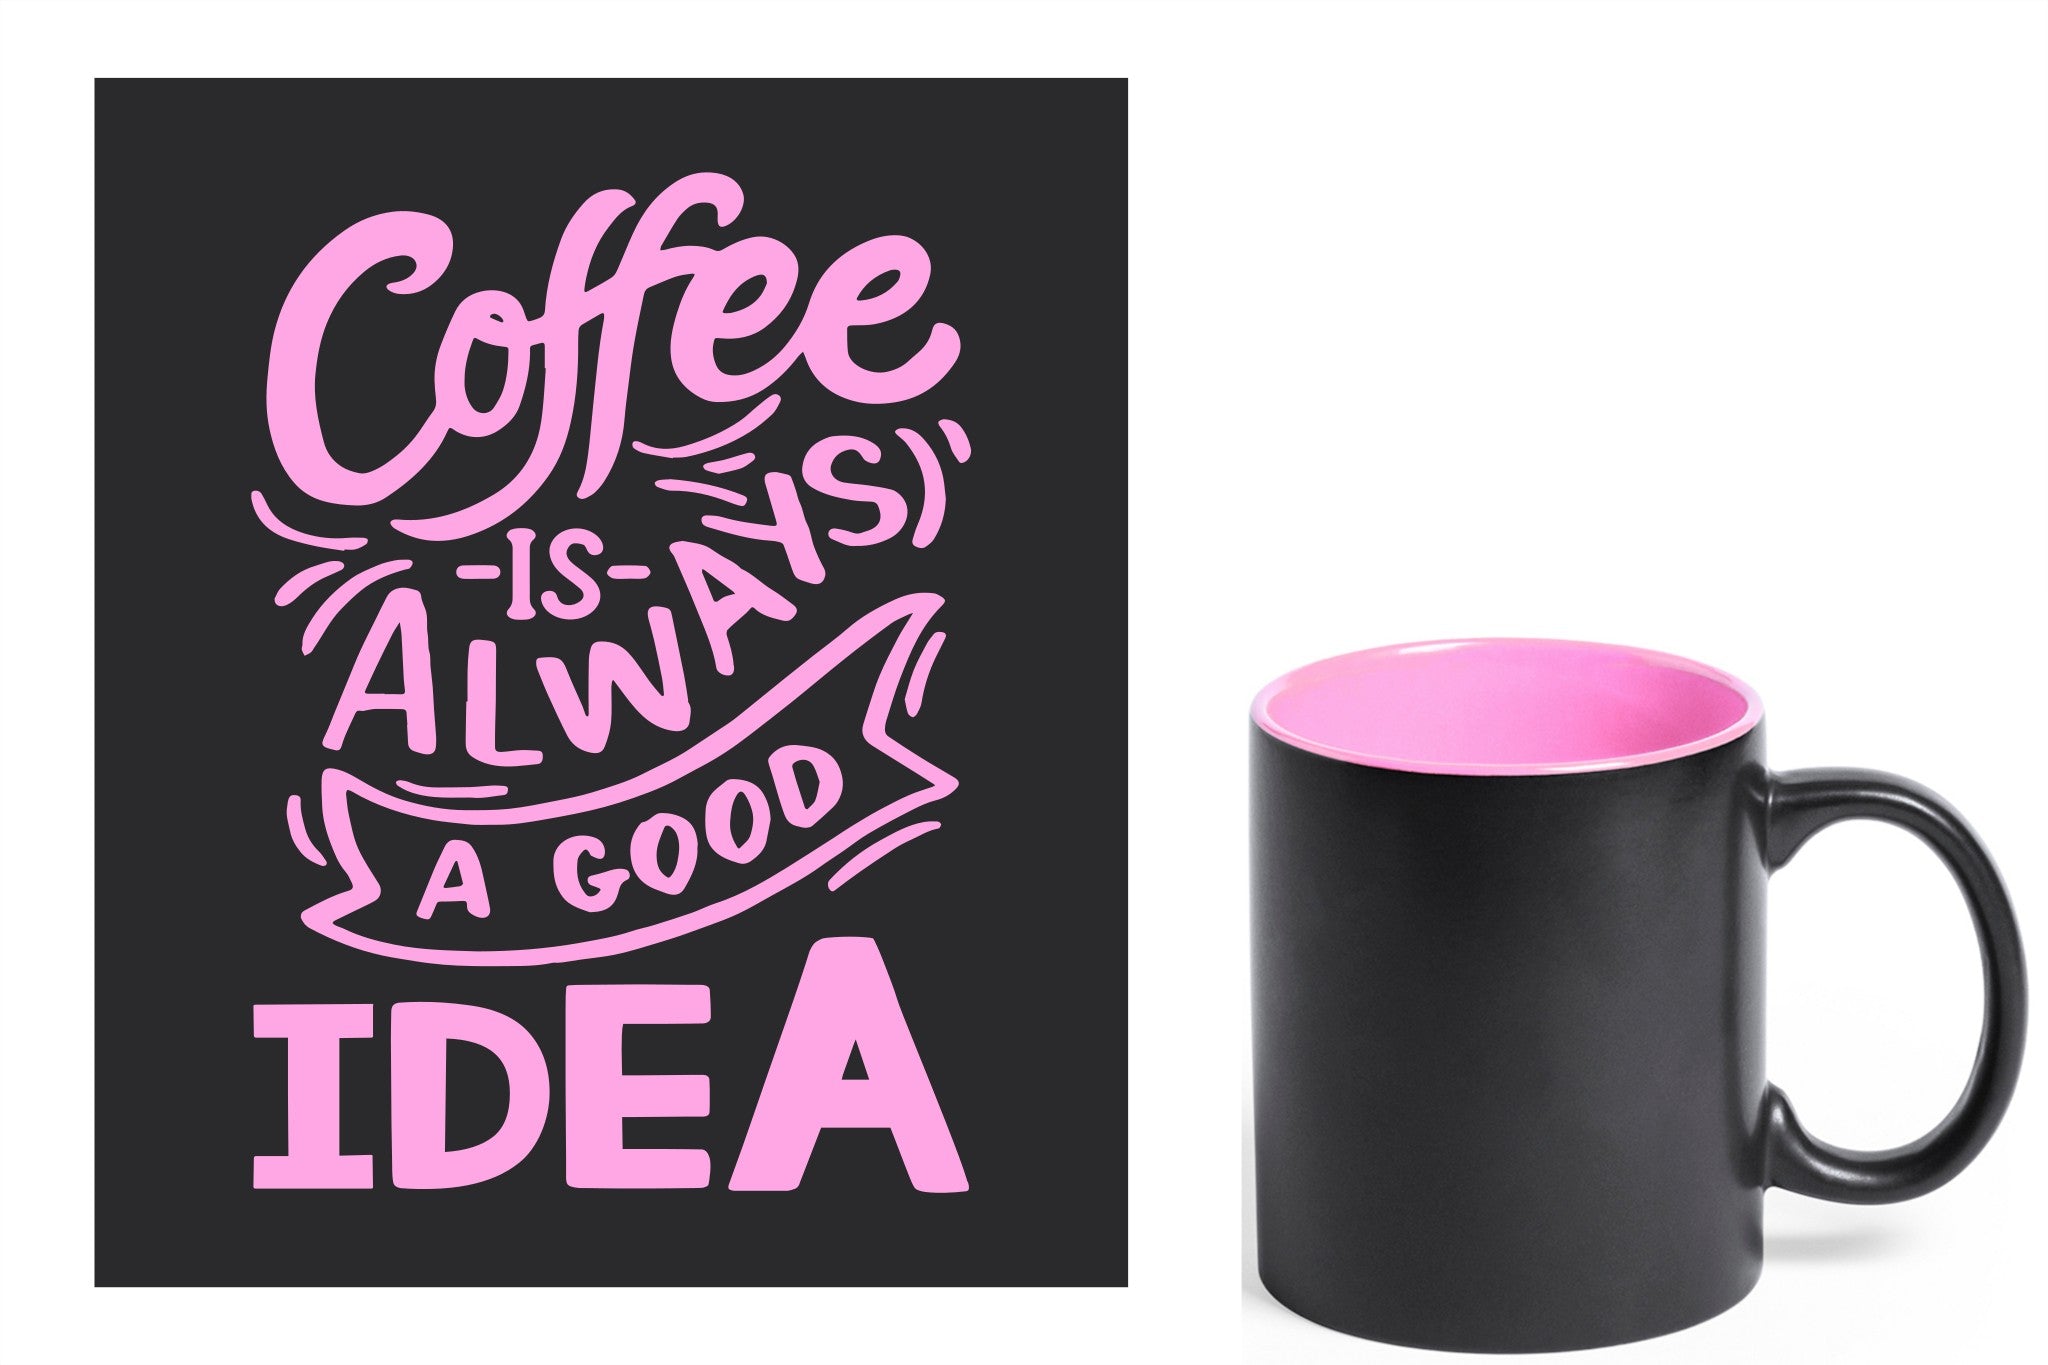 zwarte keramische mok met roze gravure  'Coffee is always a good idea'.